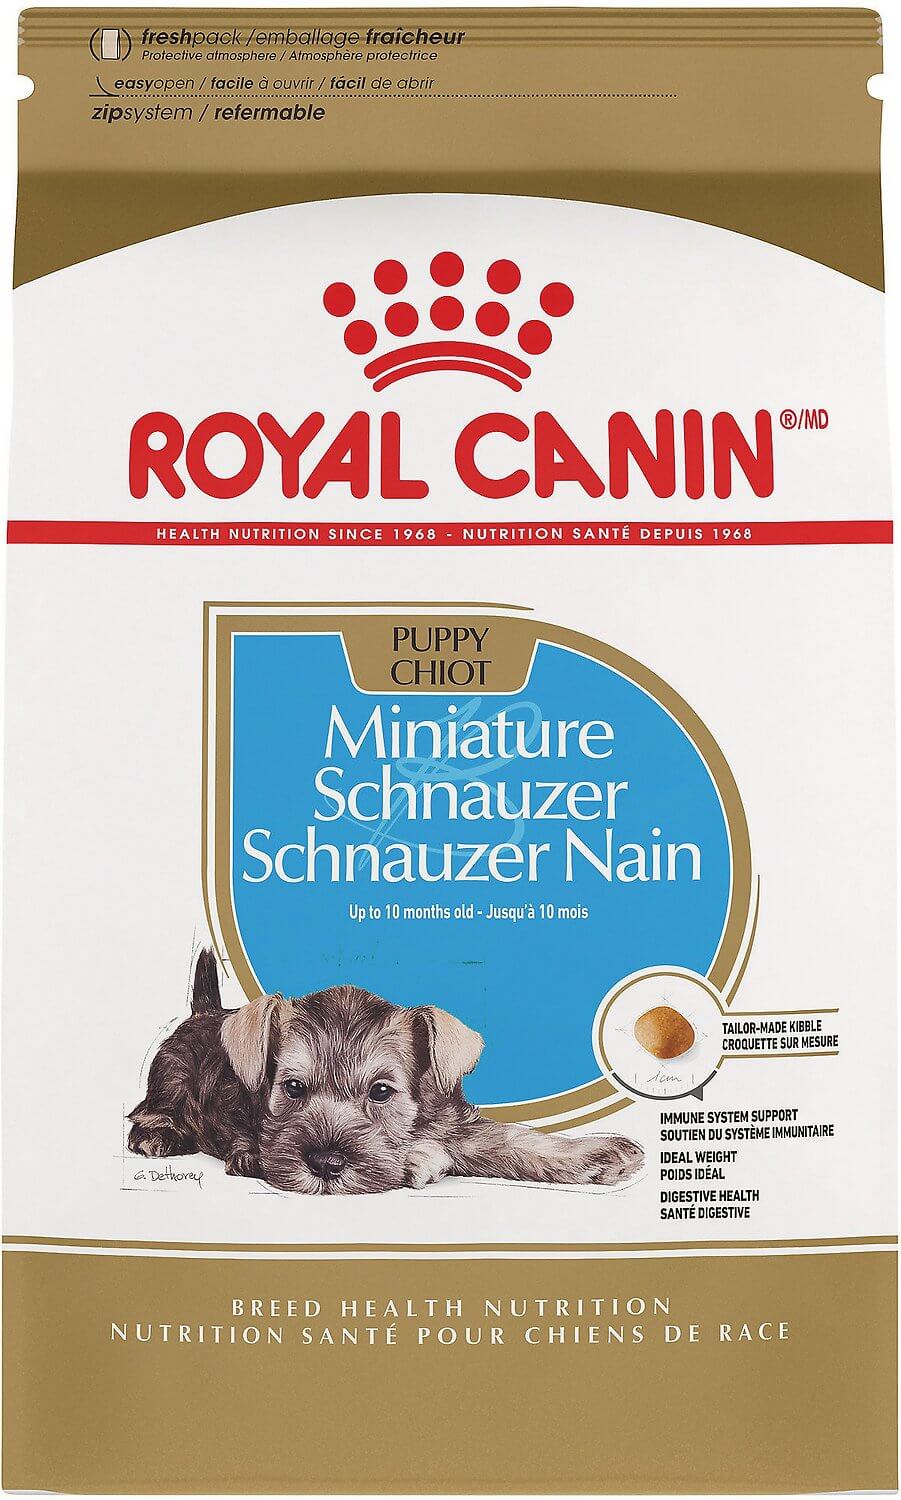 royal canin dog food rating